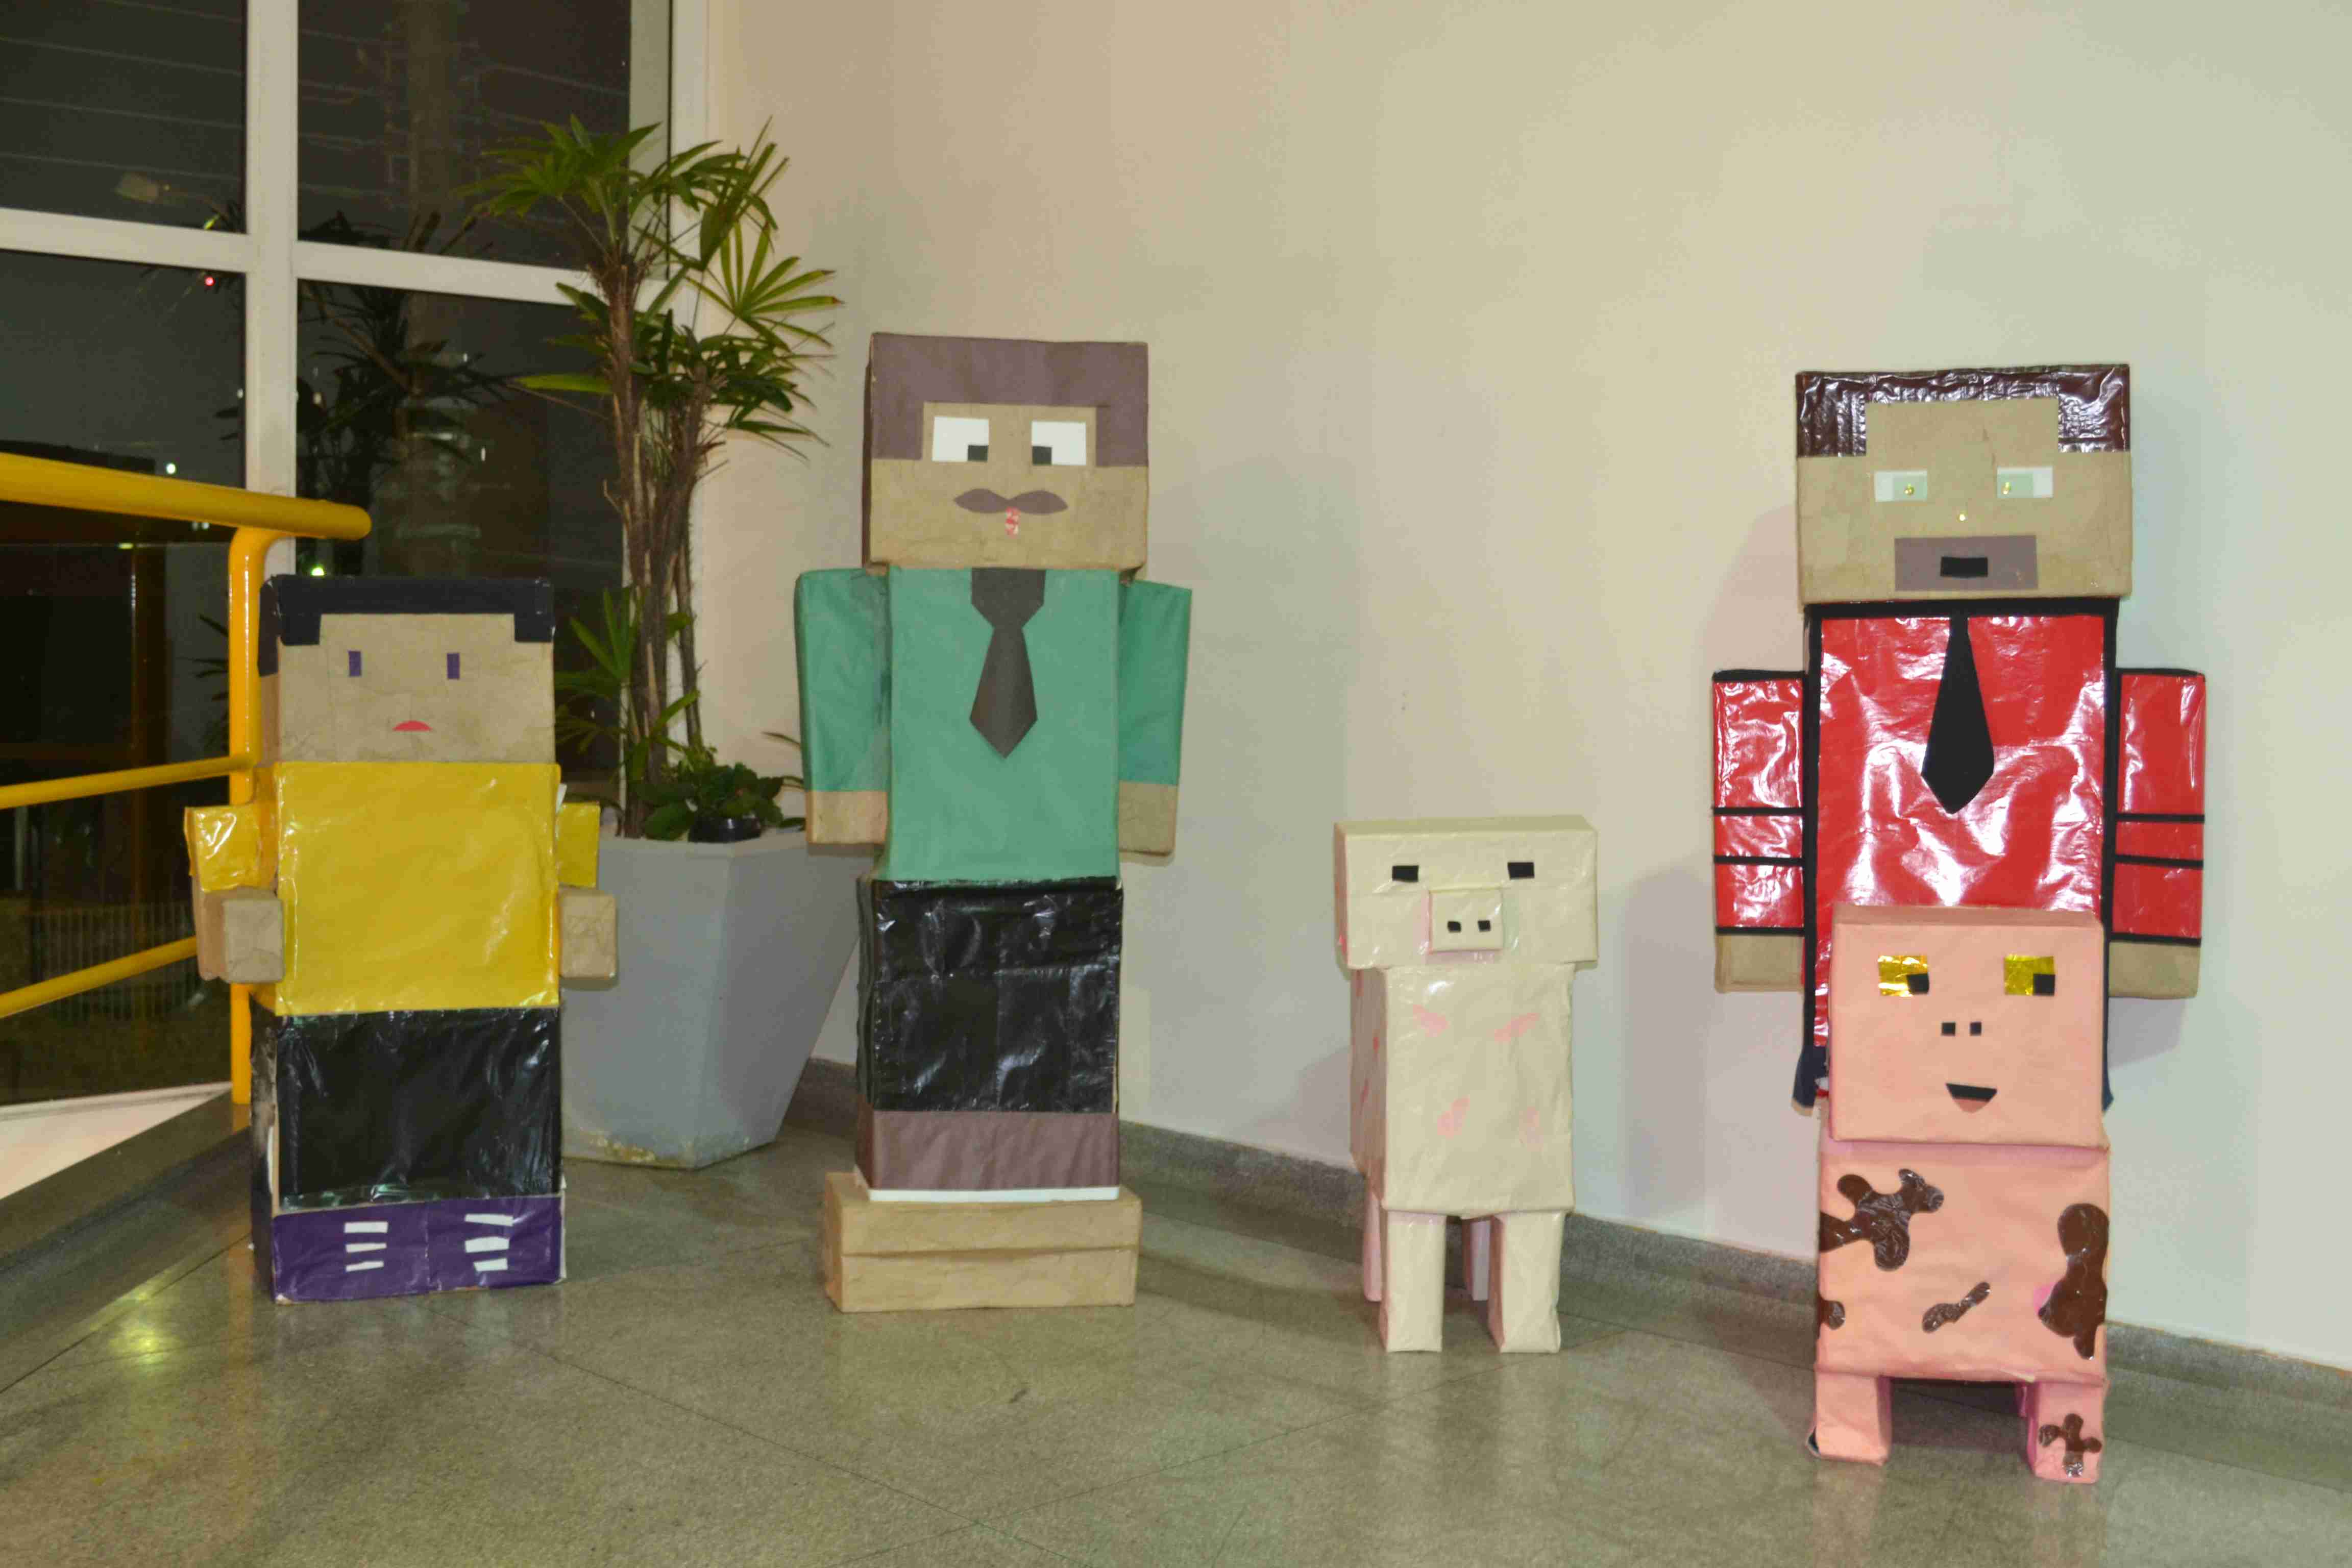 Minecraft contribui para o ensino de geometria em sala de aula – Prefeitura  de Caraguatatuba